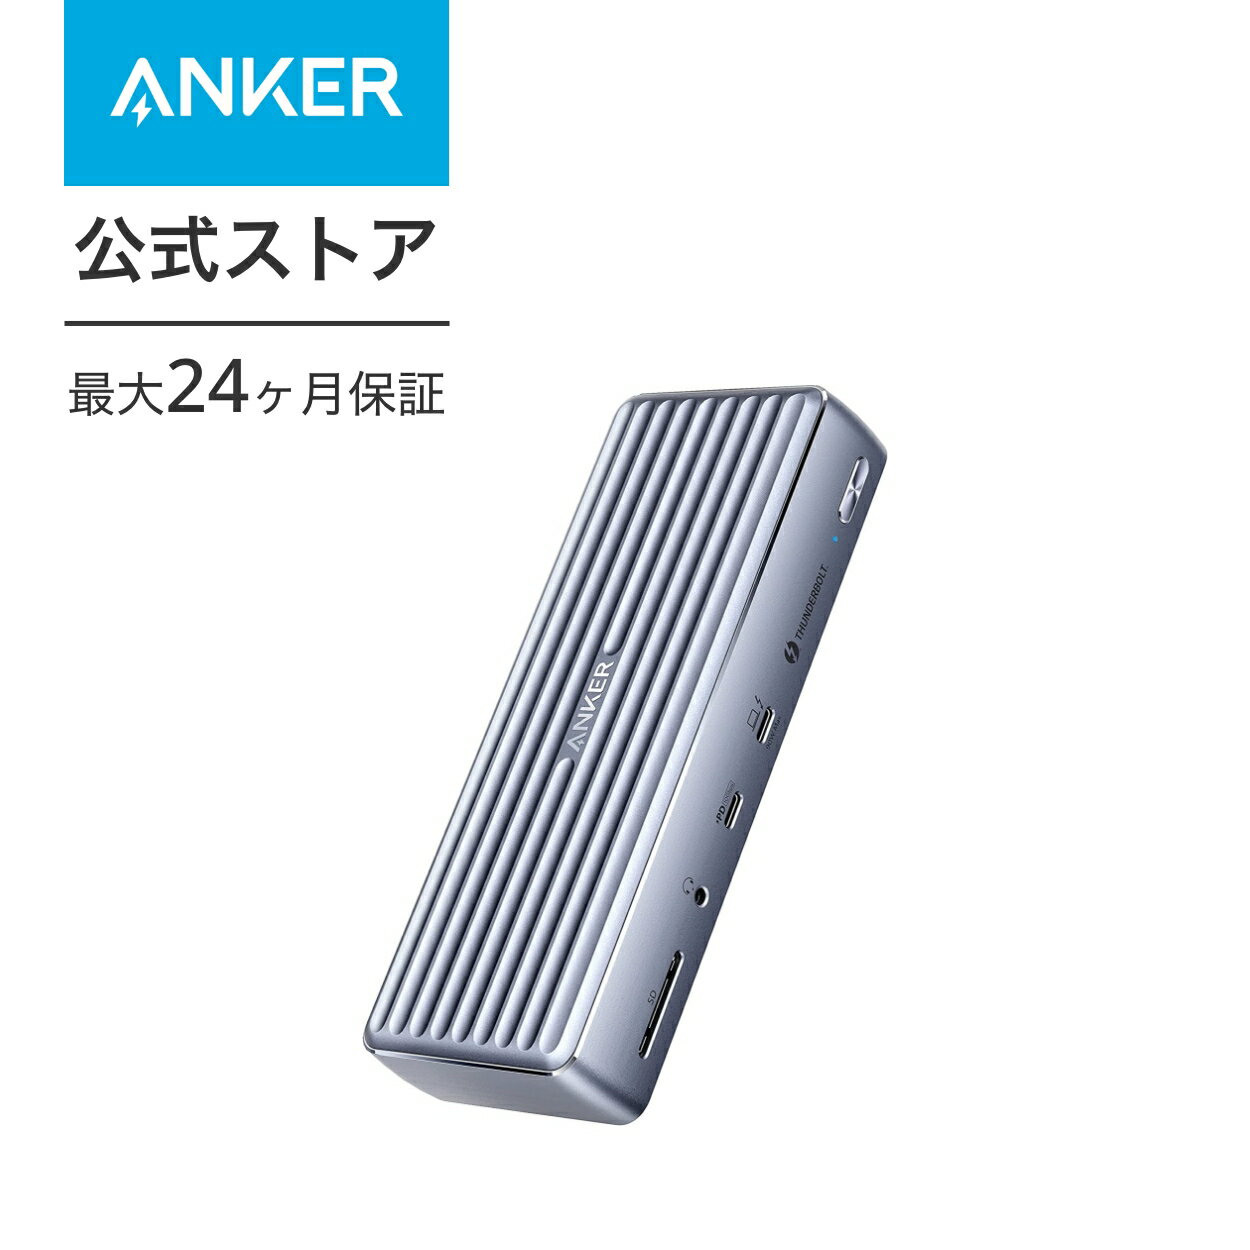 【あす楽対応】Anker PowerExpand 12-in-1 Thunderbolt 4 Dock APEX ドッキングステーション 90W出力 USB Power Delivery 対応 USB-Cポート 8K対応 4K対応 HDMIポート USB-Aポート 1Gbps